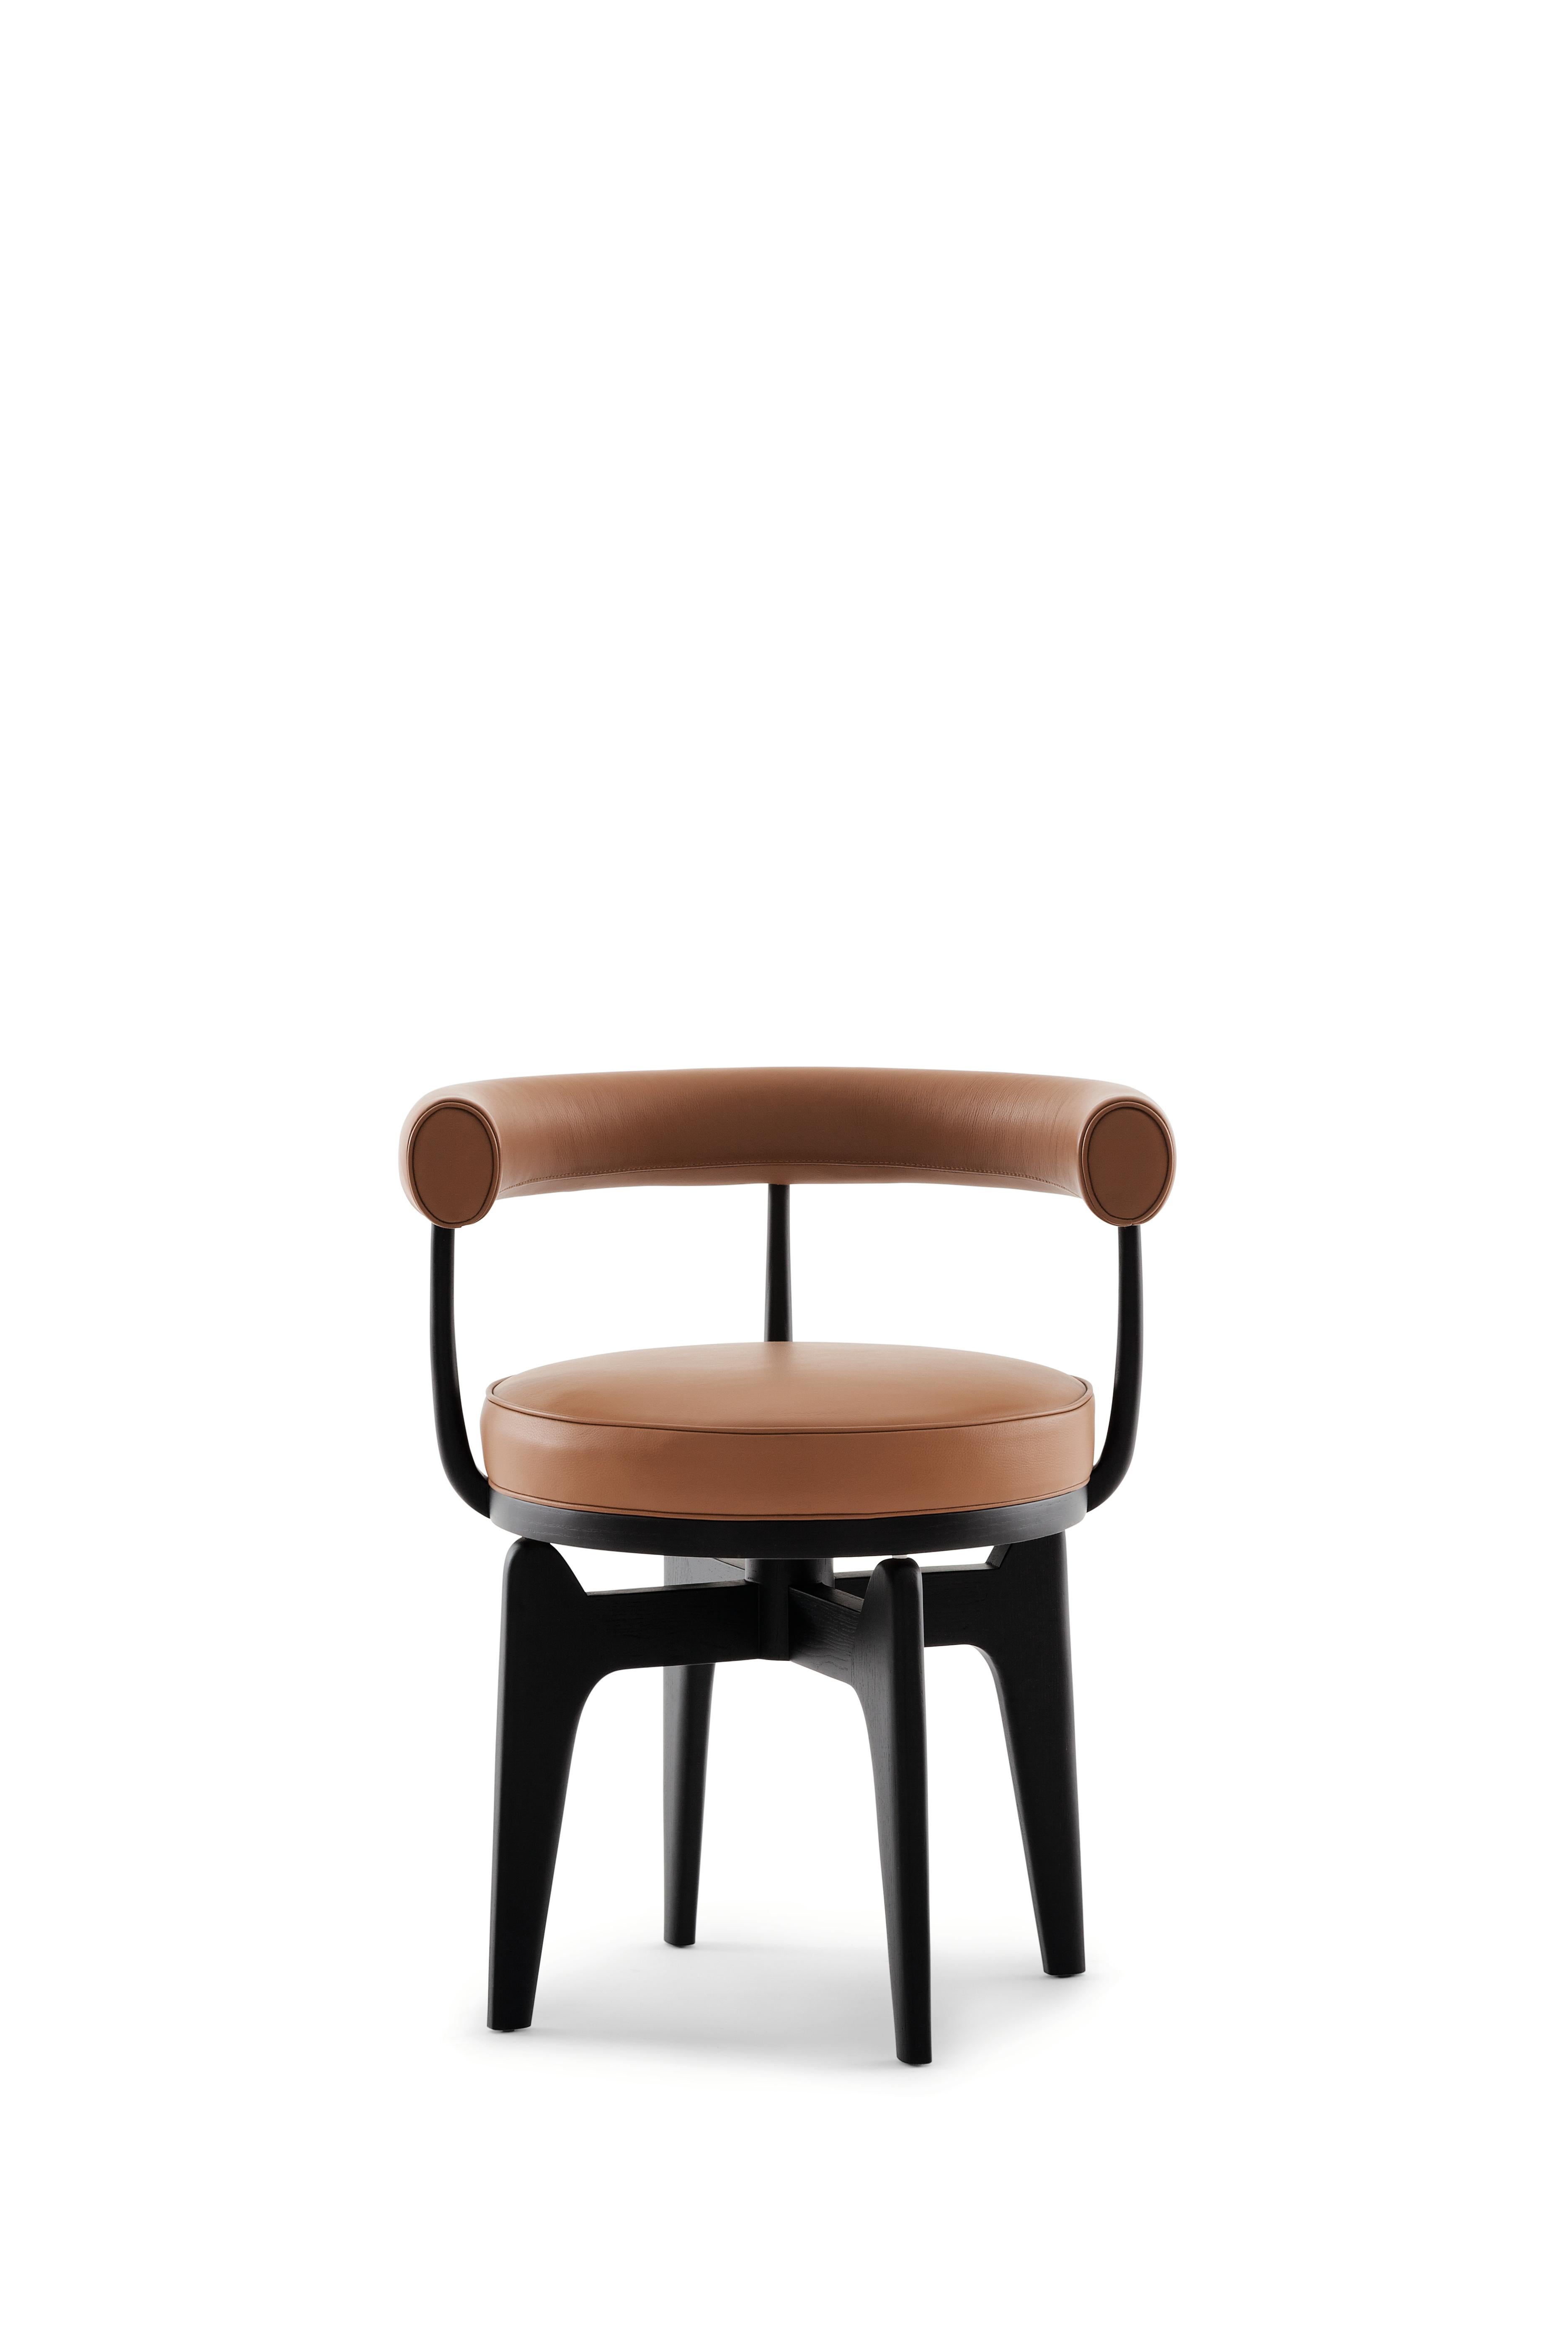 Fauteuil Indochine de Charlotte Perriand
Fabriqué par Cassina en Italie.

Ce fauteuil pivotant est une reprise du LC7, dont la structure était en métal tubulaire, et qui était l'œuvre de Charlotte Perriand en 1927. Il a ensuite été exposé avec